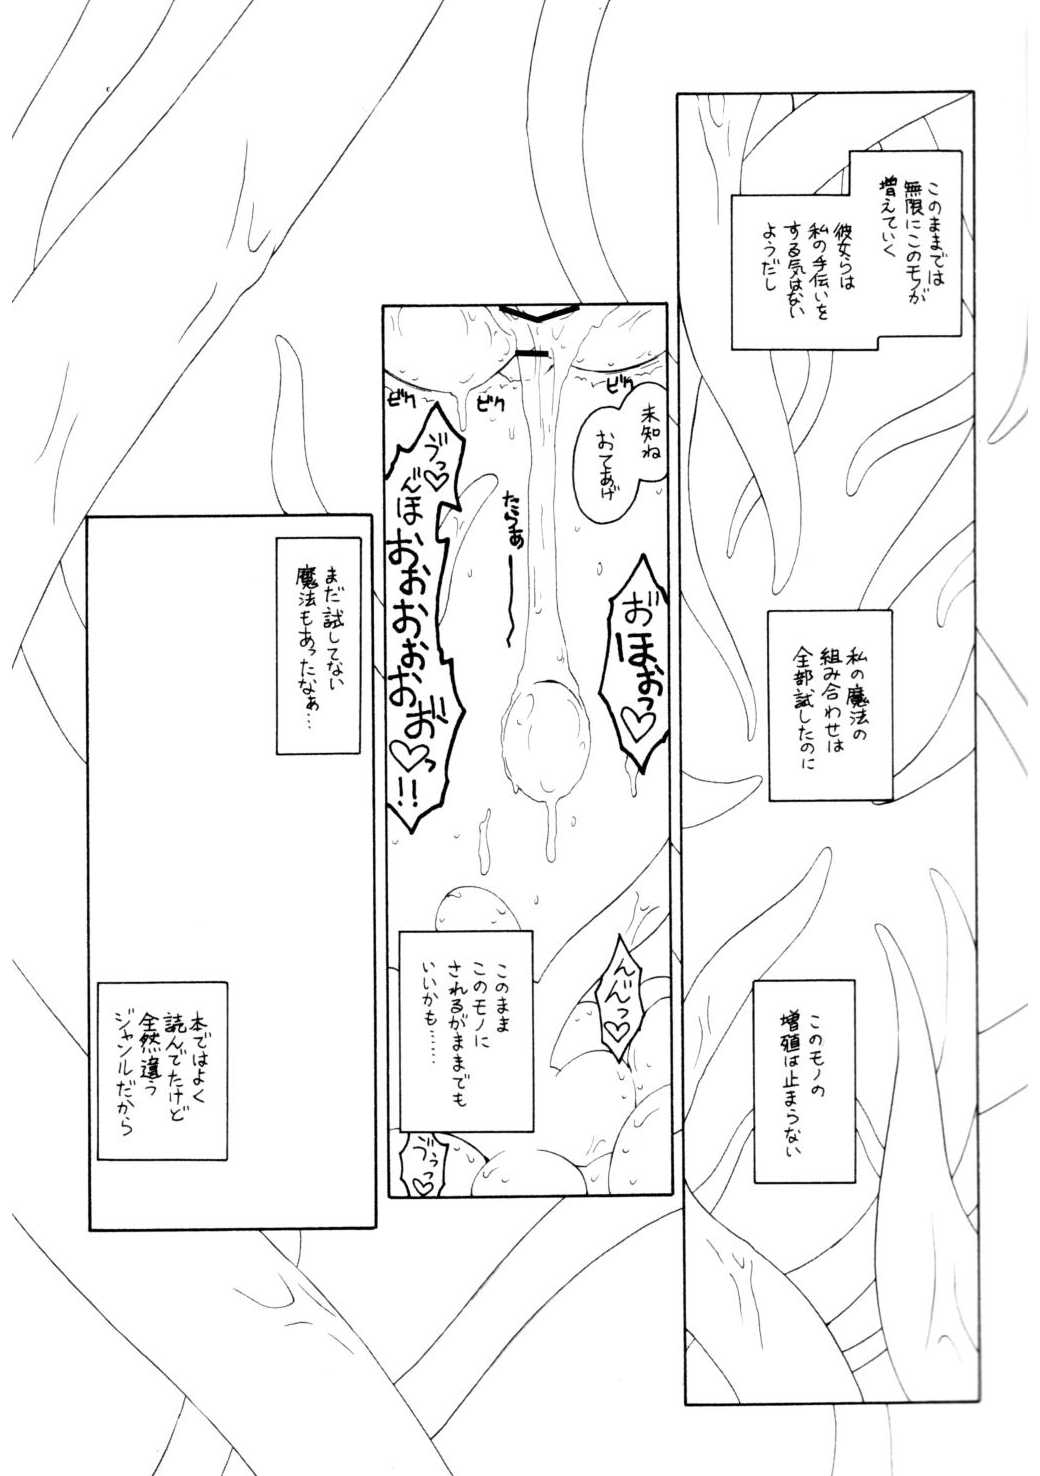 [ERA FEEL] pachuri no senrei 2 aru yakata no ichi nichi sono 2 (touhou)(C75) 